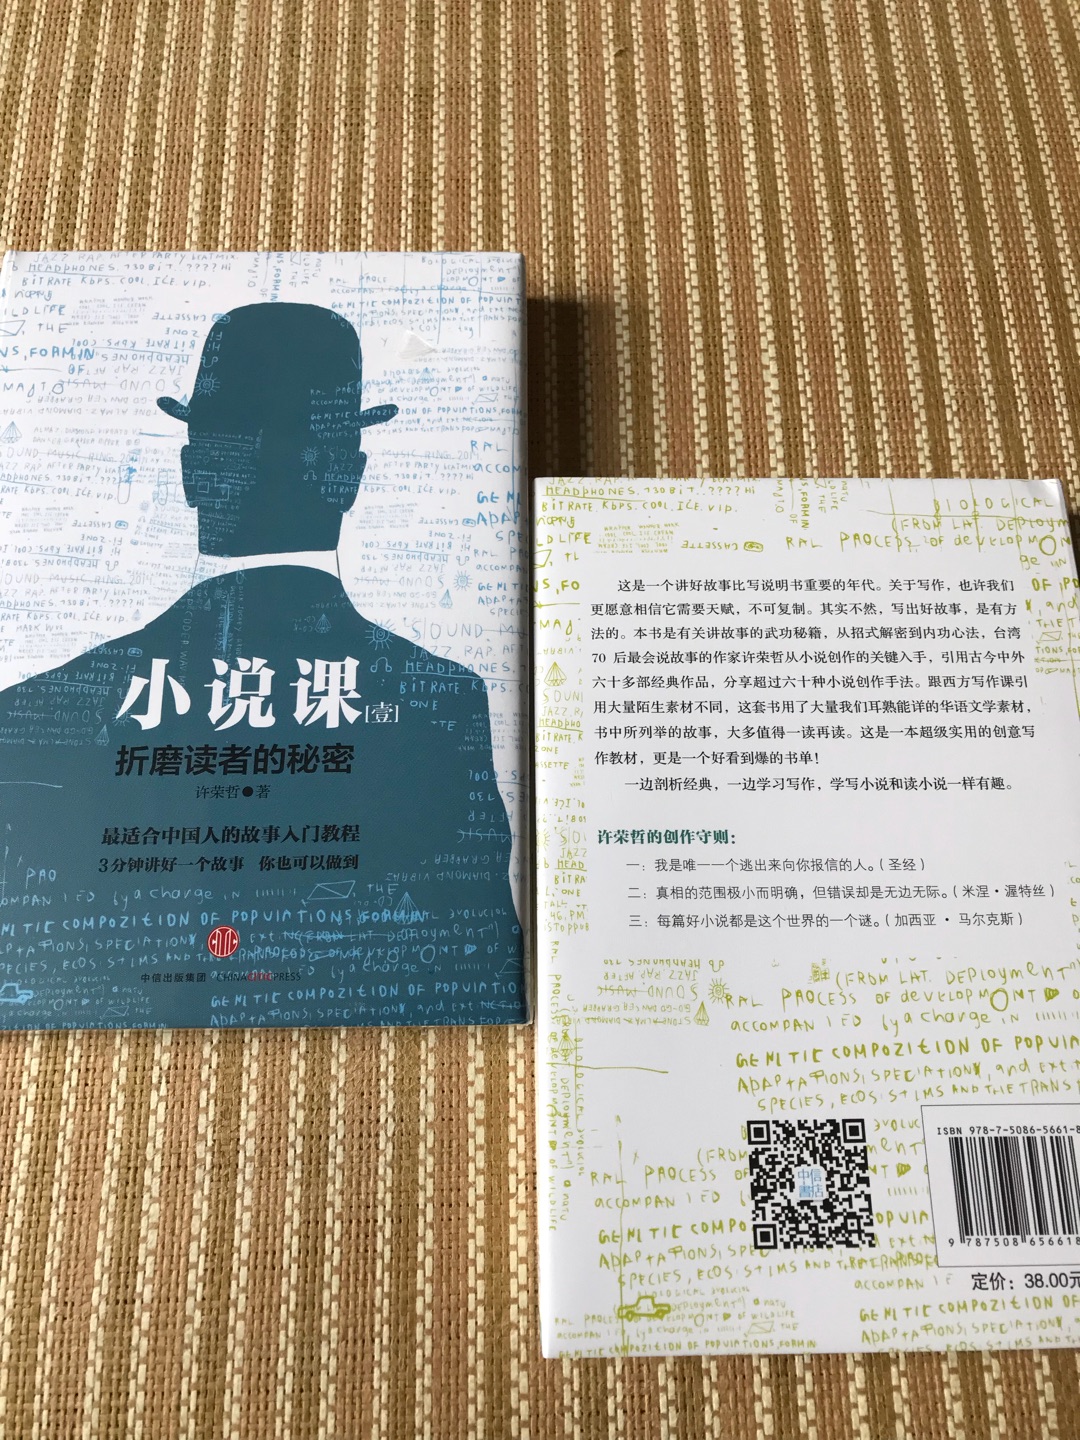 很中国化的一本写作和鉴赏教程。对讲好故事，写好文章，提高审美素养，丰富人文内涵，有帮助。